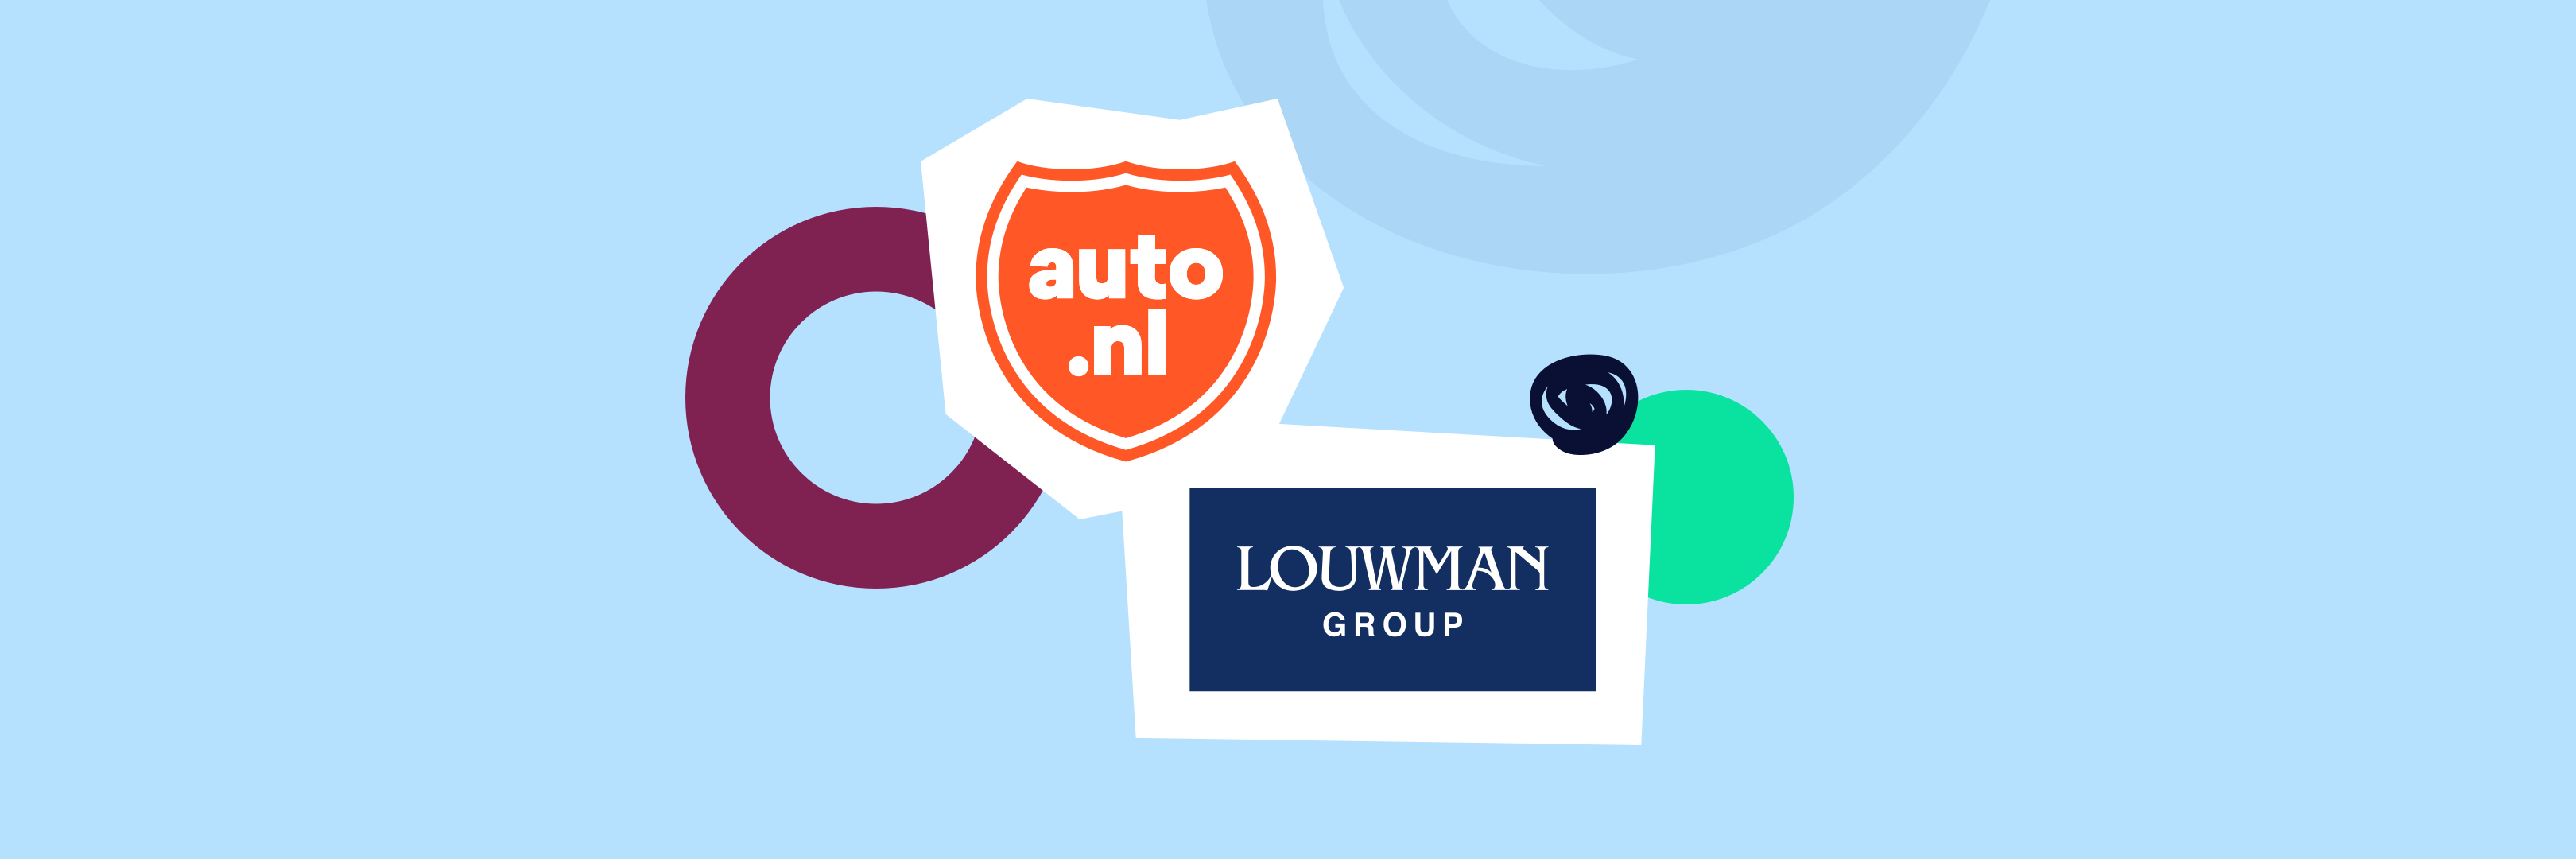 Louwman Group Eigenaar Van Auto Nl Auto Nl